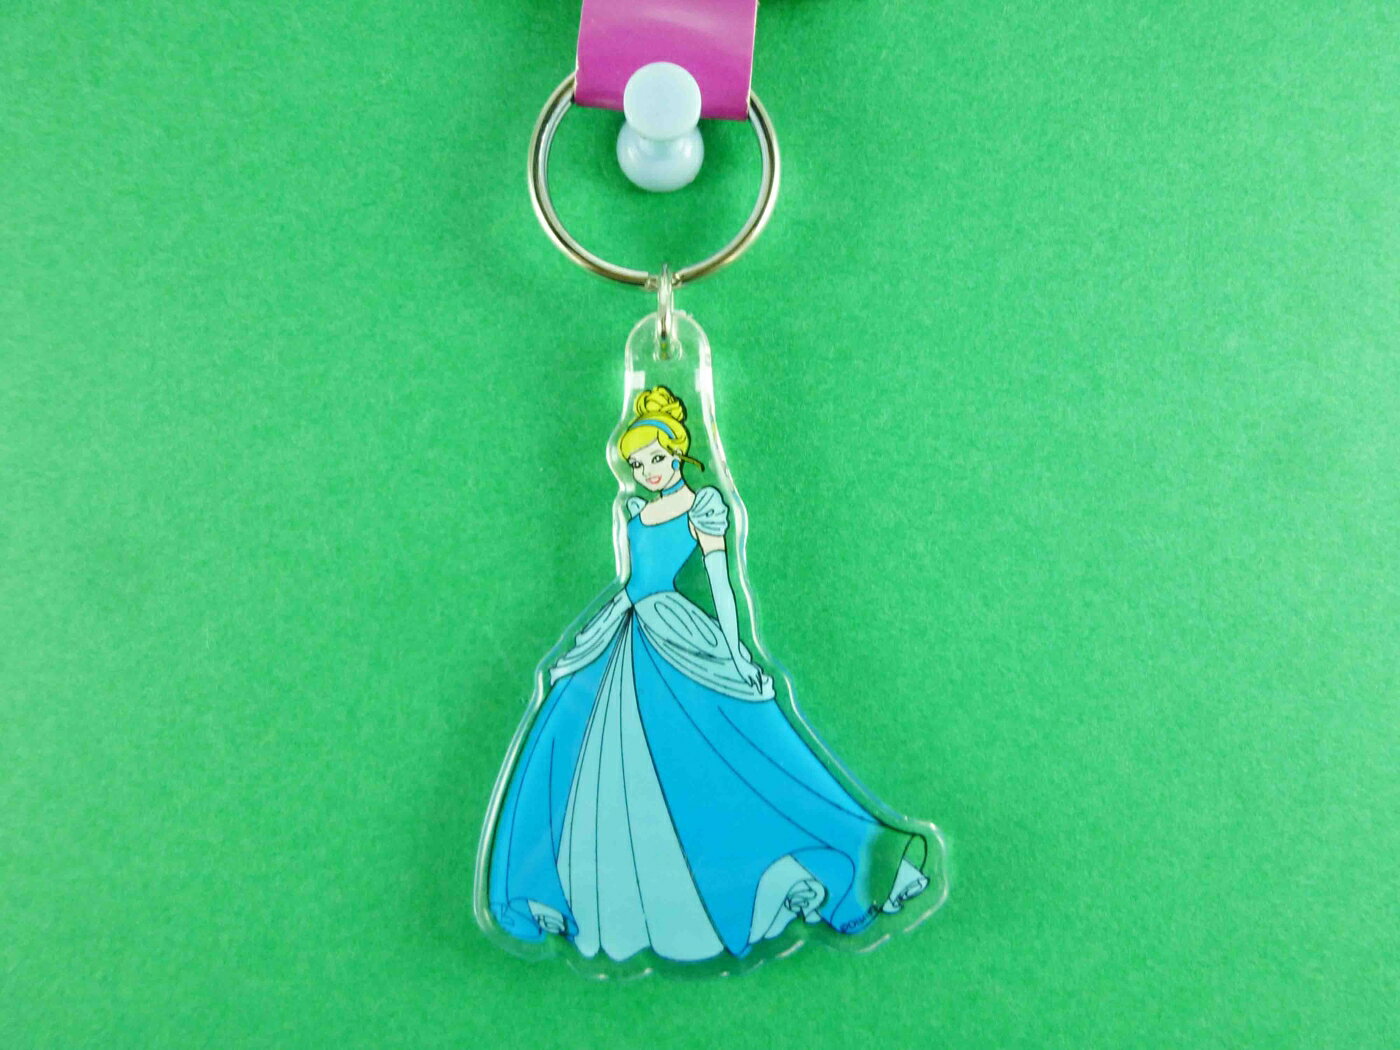 【震撼精品百貨】公主 系列Princess 立體造型鑰匙圈-睡美人圖案 震撼日式精品百貨